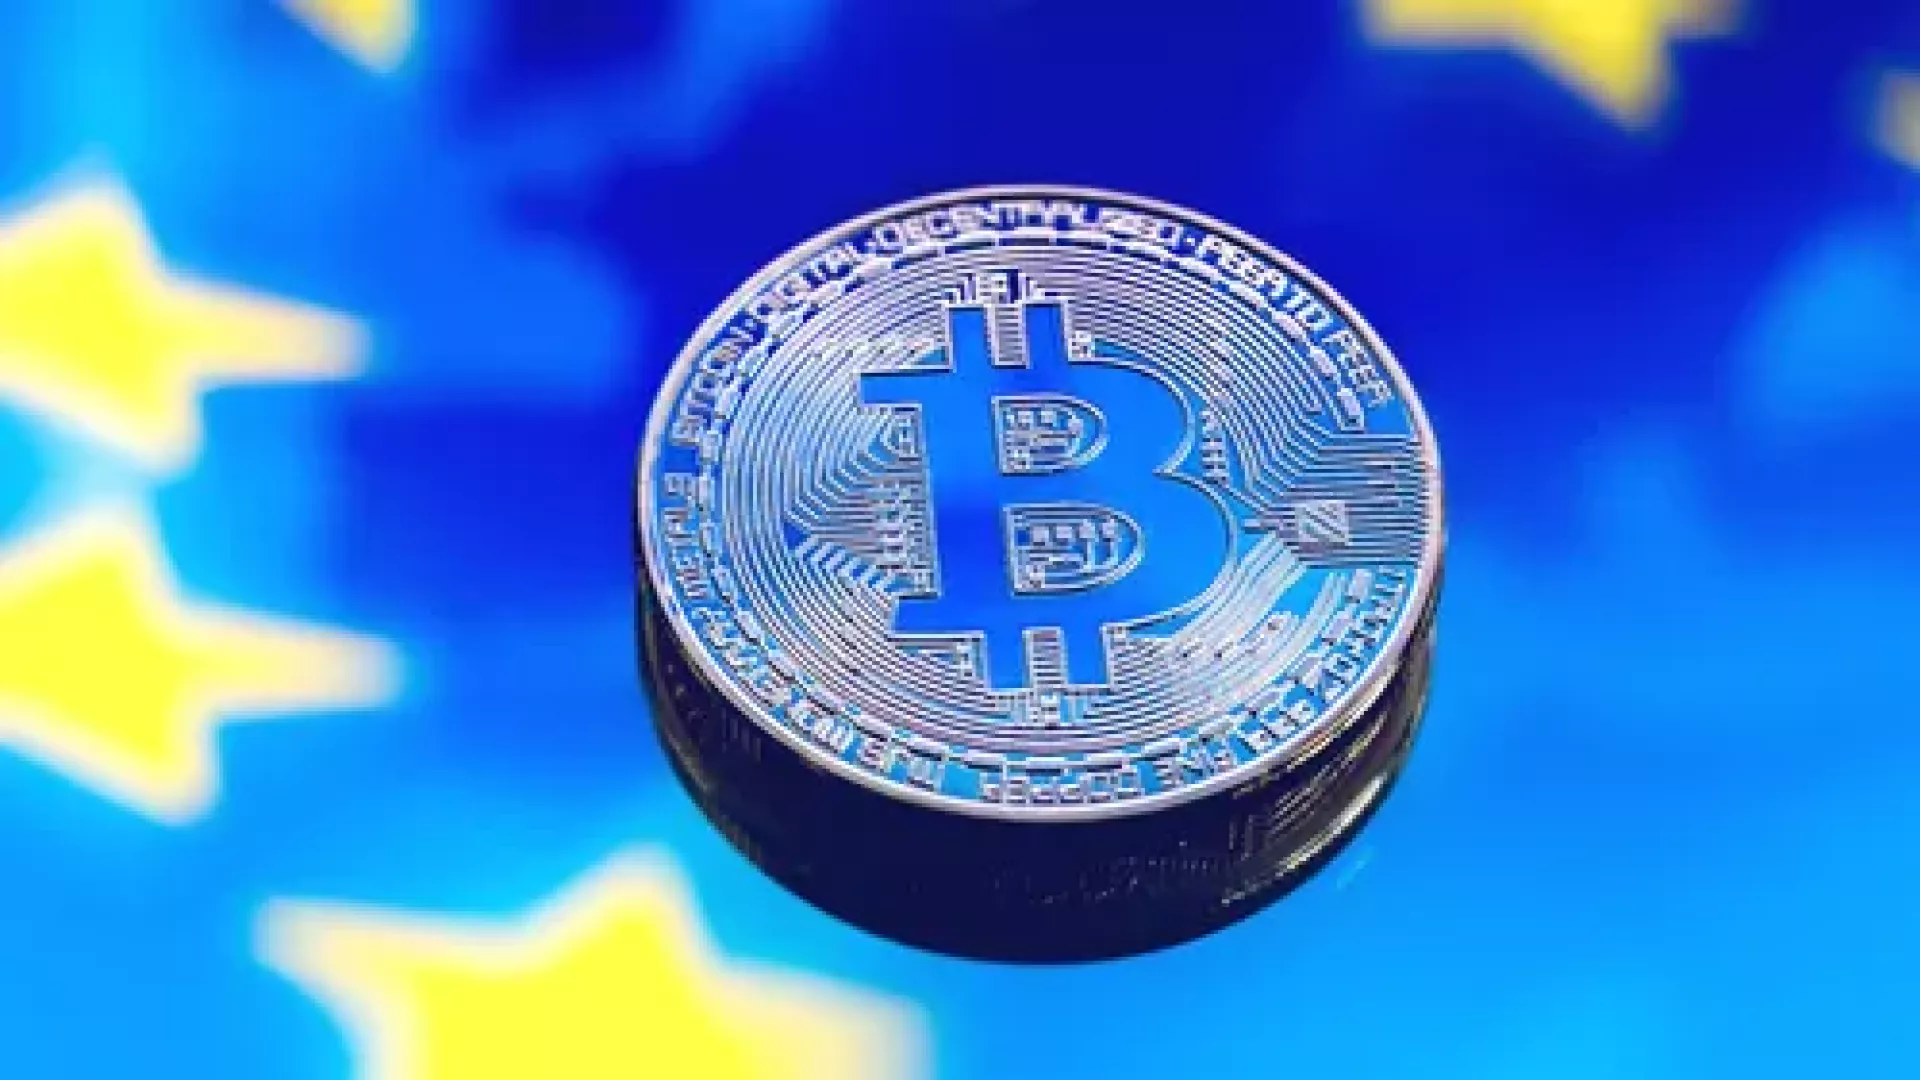 Prvý politik v EÚ bude dostávať výplatu v Bitcoine. Zapojenie bánk do krypto sveta sa zdvojnásobí